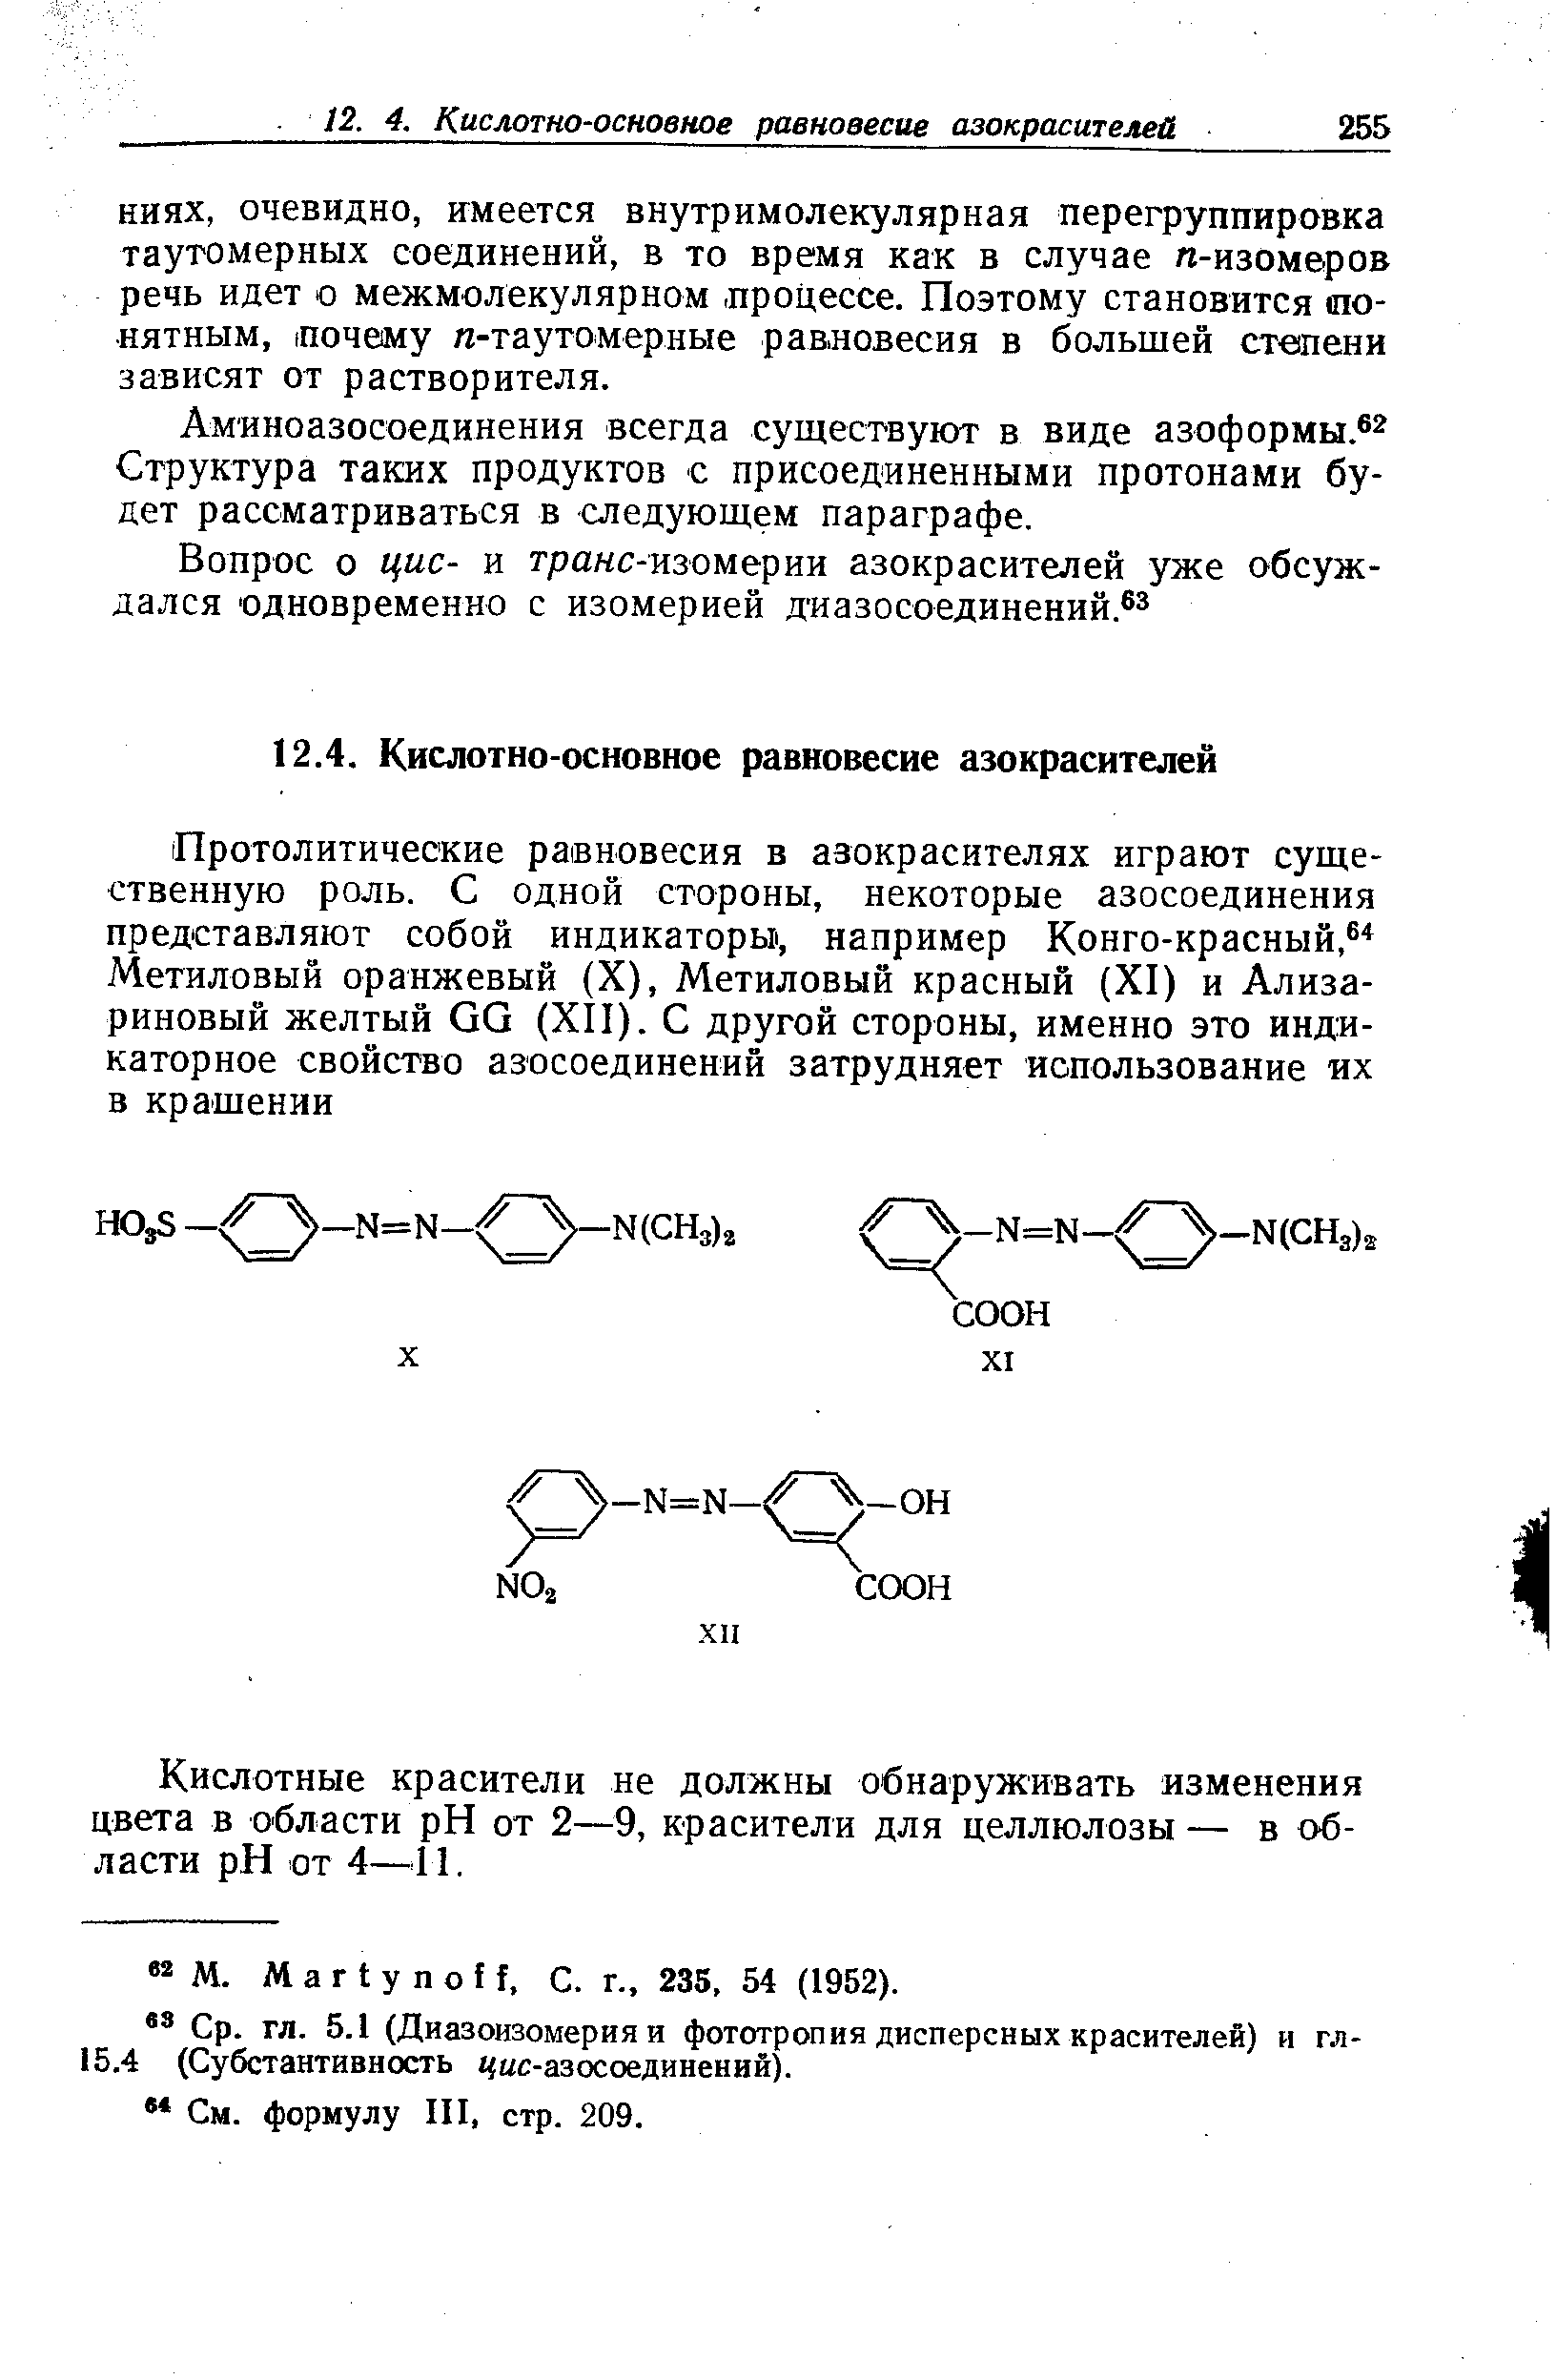 Аминоазосоединения всегда существуют в виде азоформы. Структура таких продуктов с присоединенными протонами будет рассматриваться в следующем параграфе.